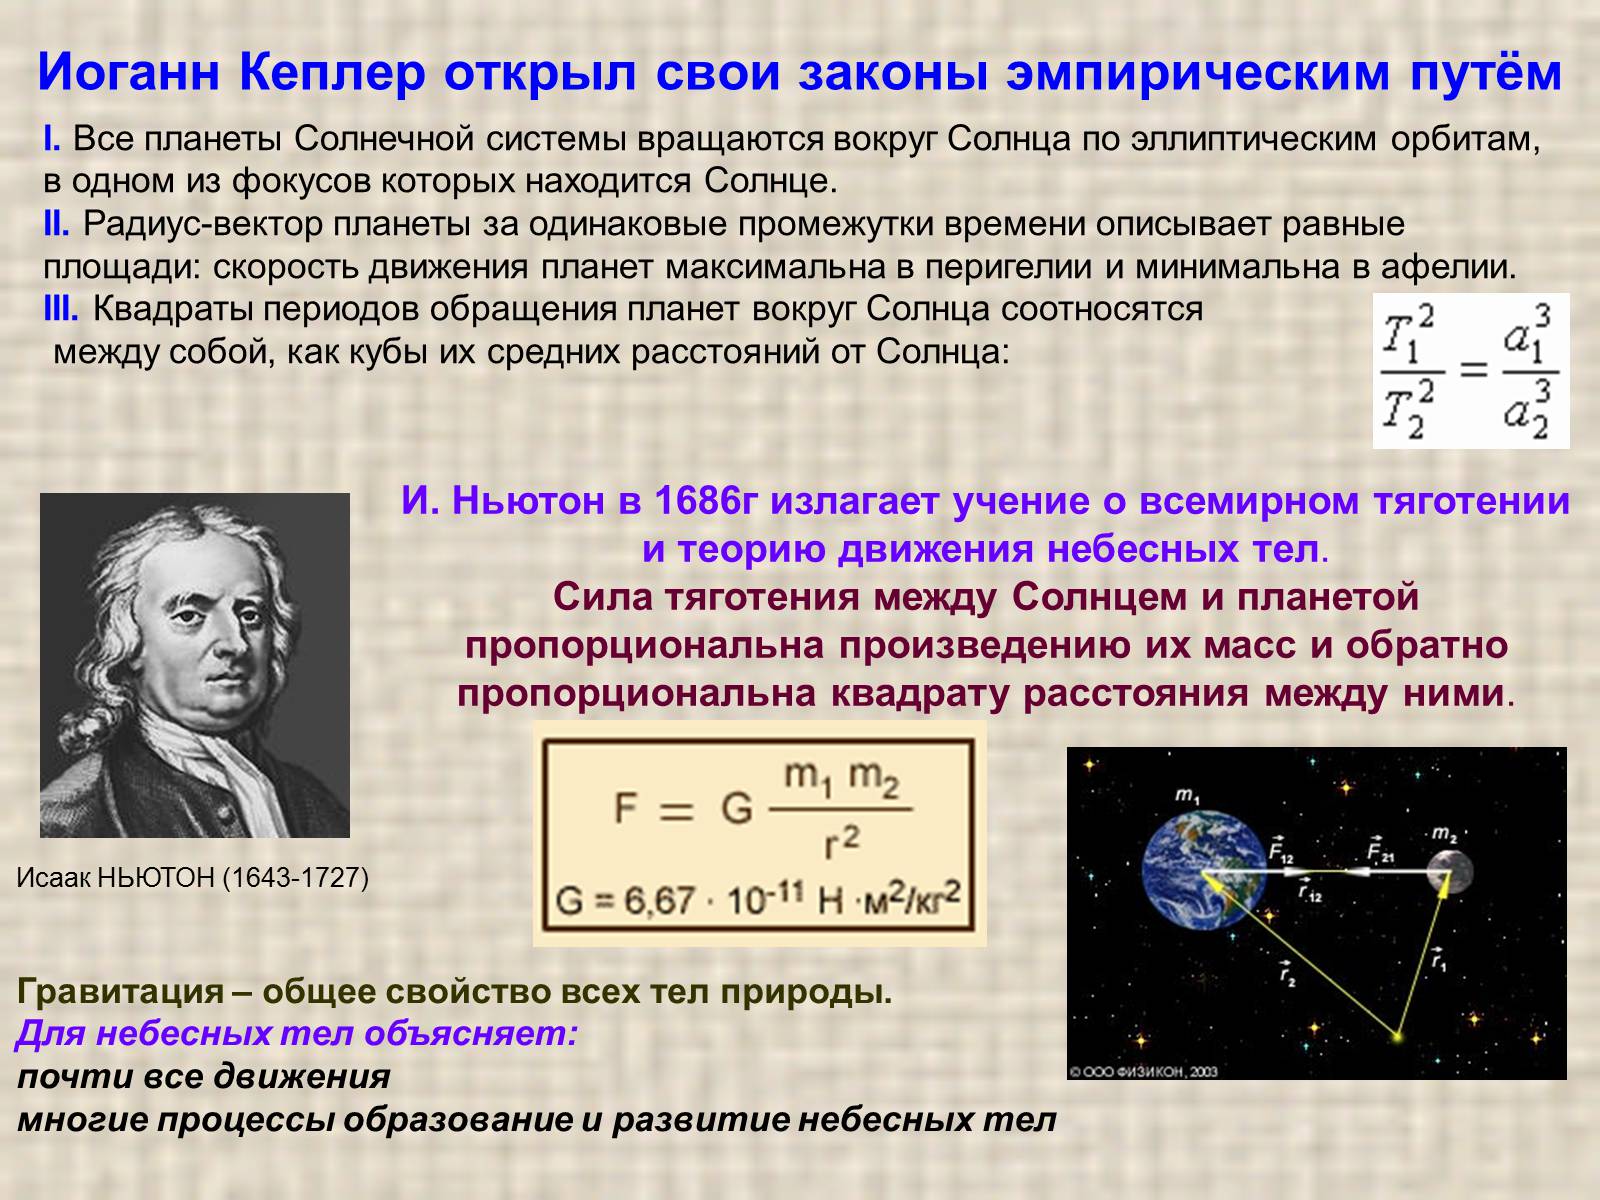 3 Закона движения планет Кеплера